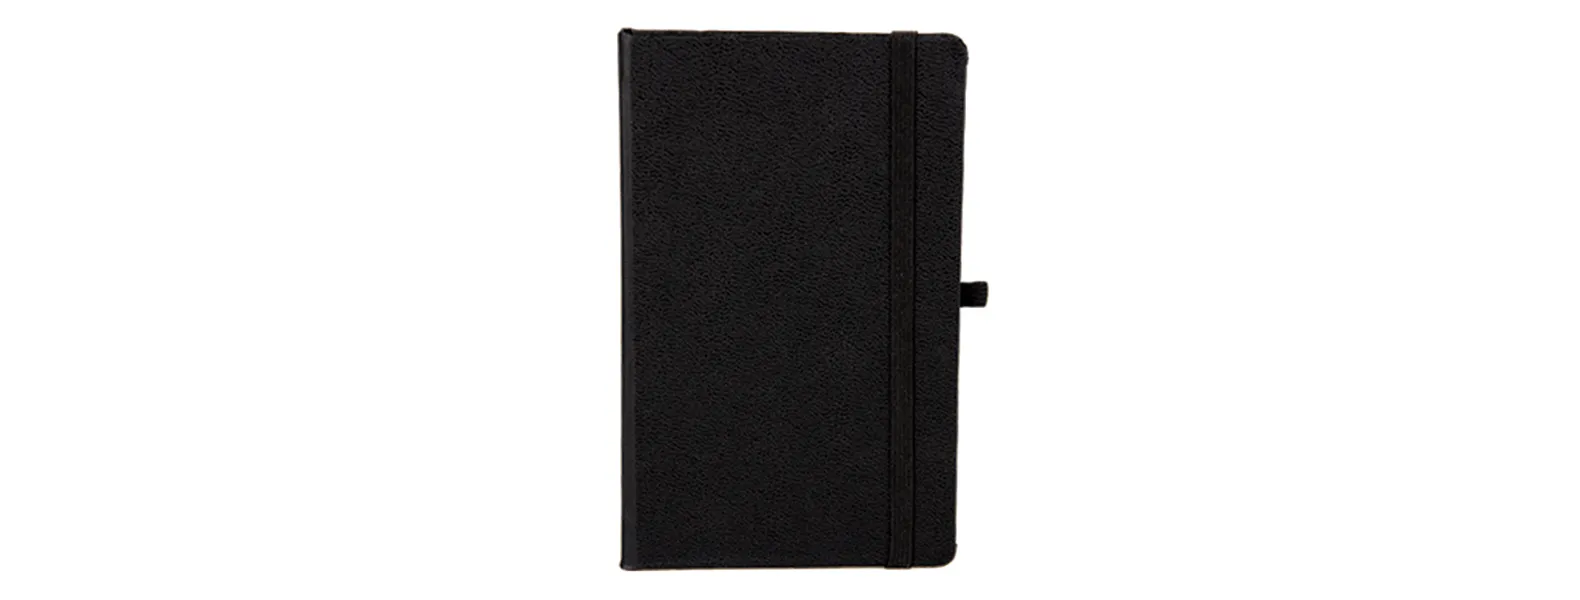 Caderno para anotações preto com capa dura. Conta com 80 folhas pautadas, marcador de página, porta caneta e elástico para fechamento. Gramatura da folha de 70 g/m2.